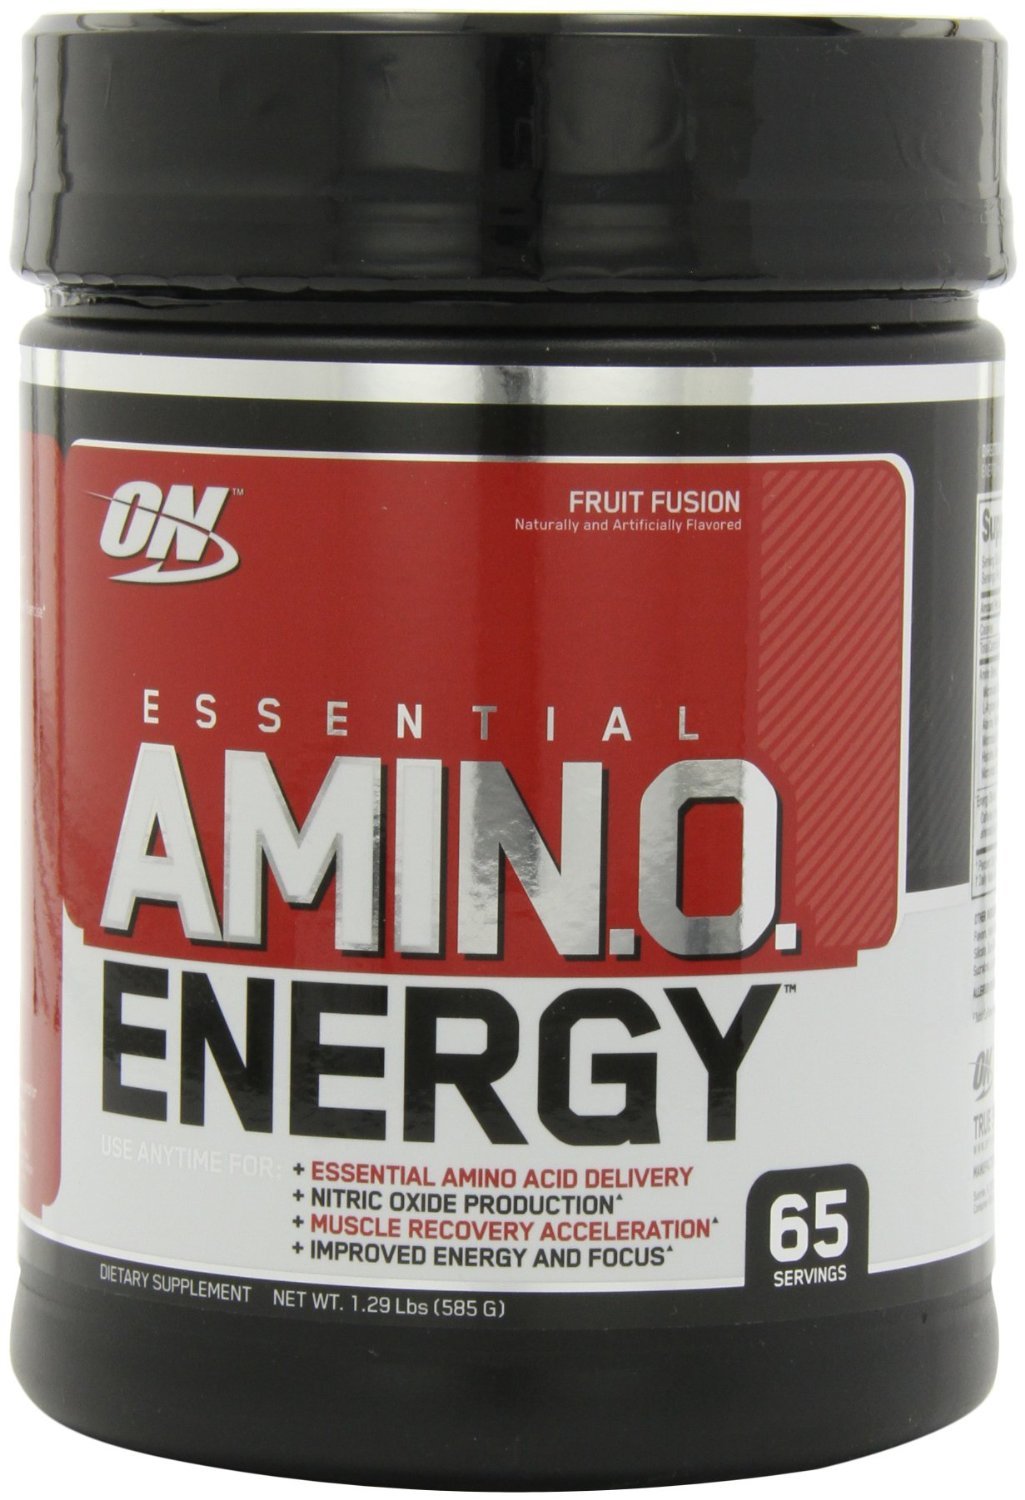 Amino Energy, 585 g, Optimum Nutrition. Amino acid complex. 